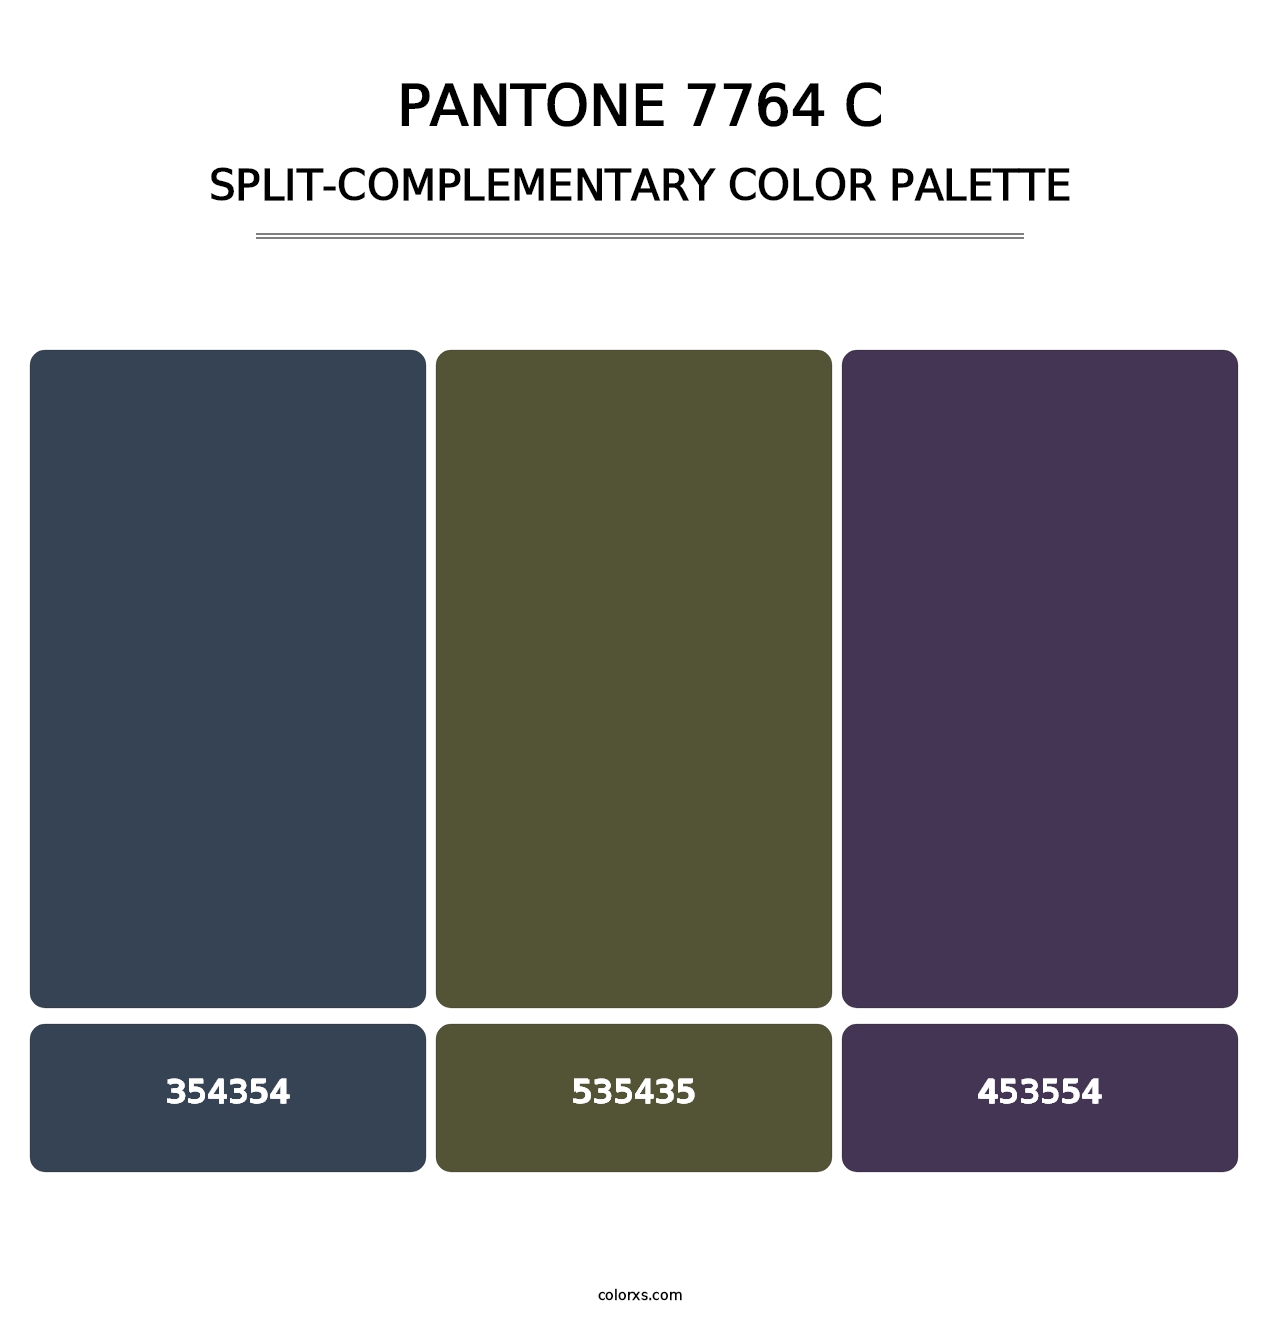 PANTONE 7764 C - Split-Complementary Color Palette